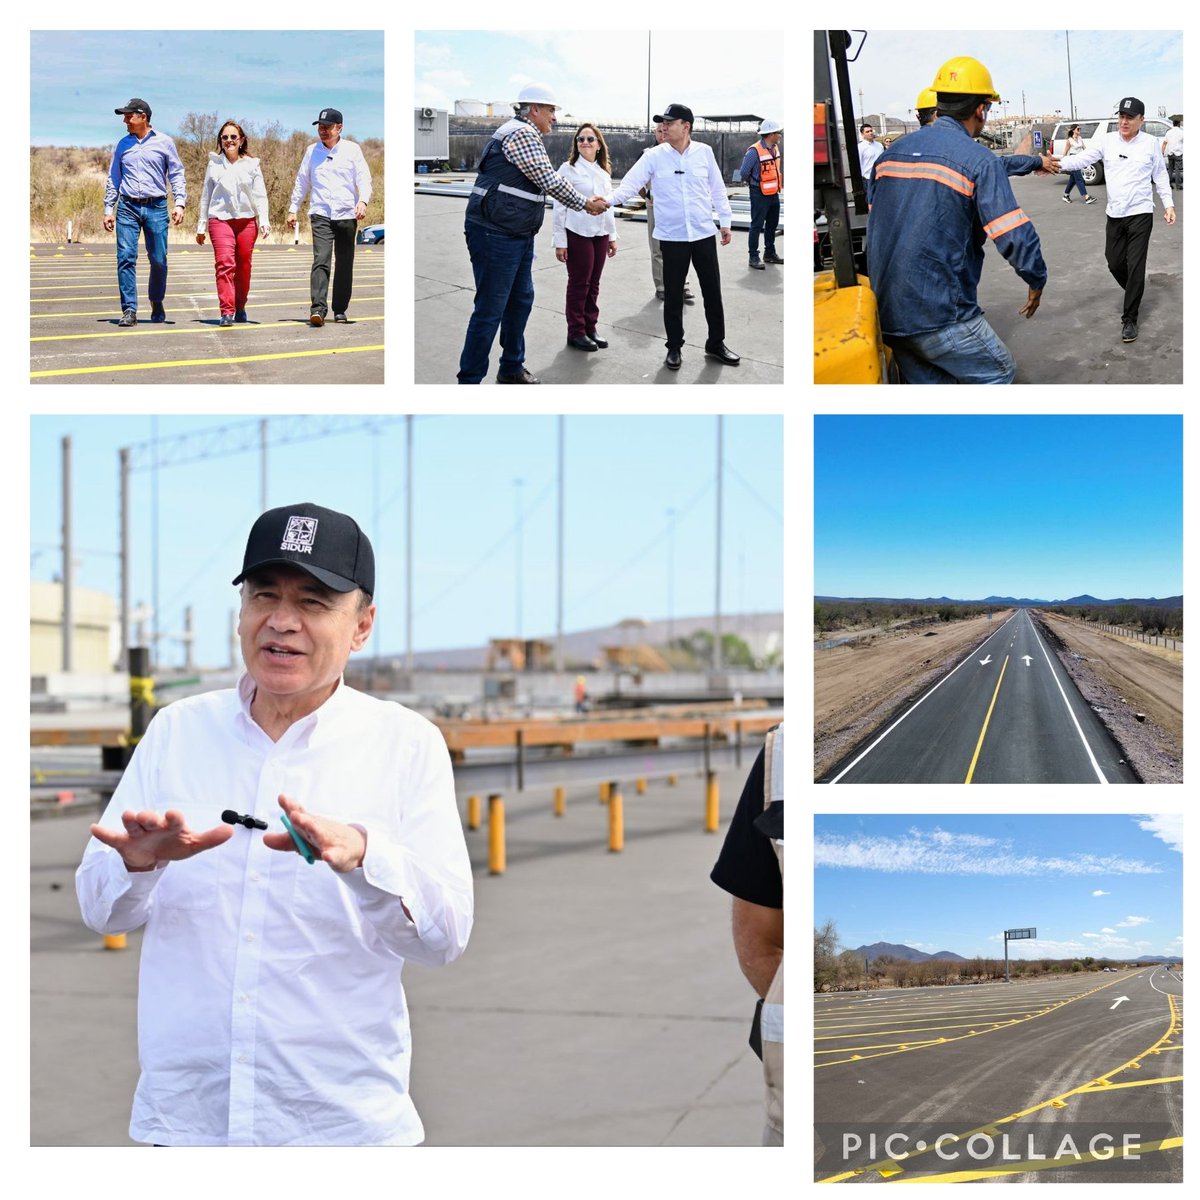 Recorre Gobernador @AlfonsoDurazo avances de Modernización del Puerto y carretera Guaymas - Chihuahua facebook.com/share/p/zyyPkT… @PaulinaOcanaE @AdolfoSalazar_ @ABN58 @Samvalor @barron_cesar @Chaposoto @feroropeza20